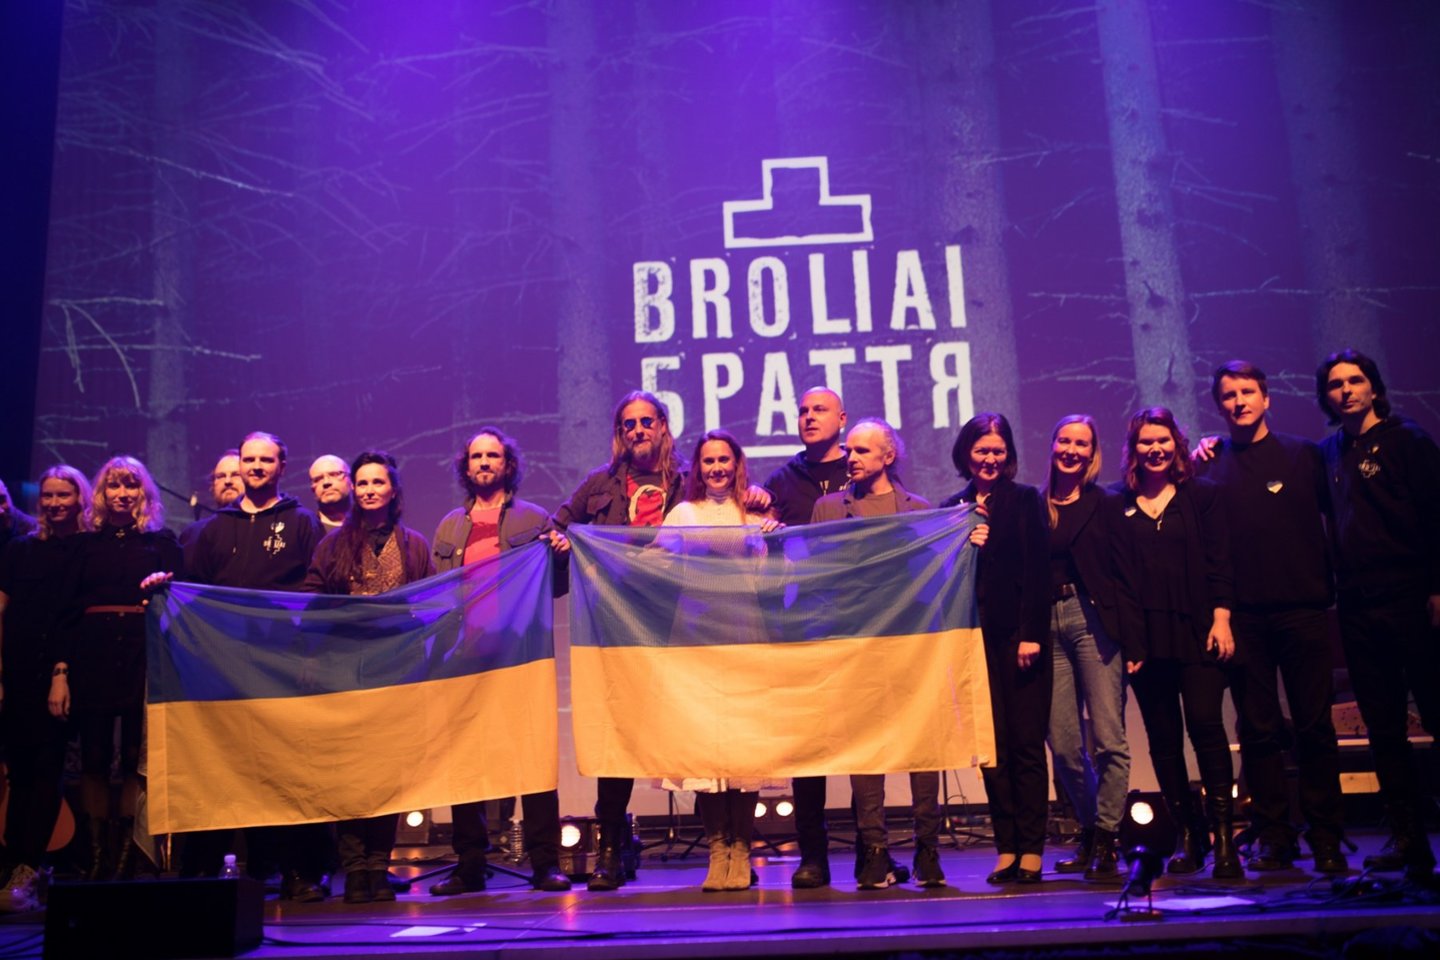  Koncerte „BROLIAI-БРАТТЯ“ – sveikinimas Lietuvai nuo Ukrainos muzikantų.<br> M.Vitėno nuotr.